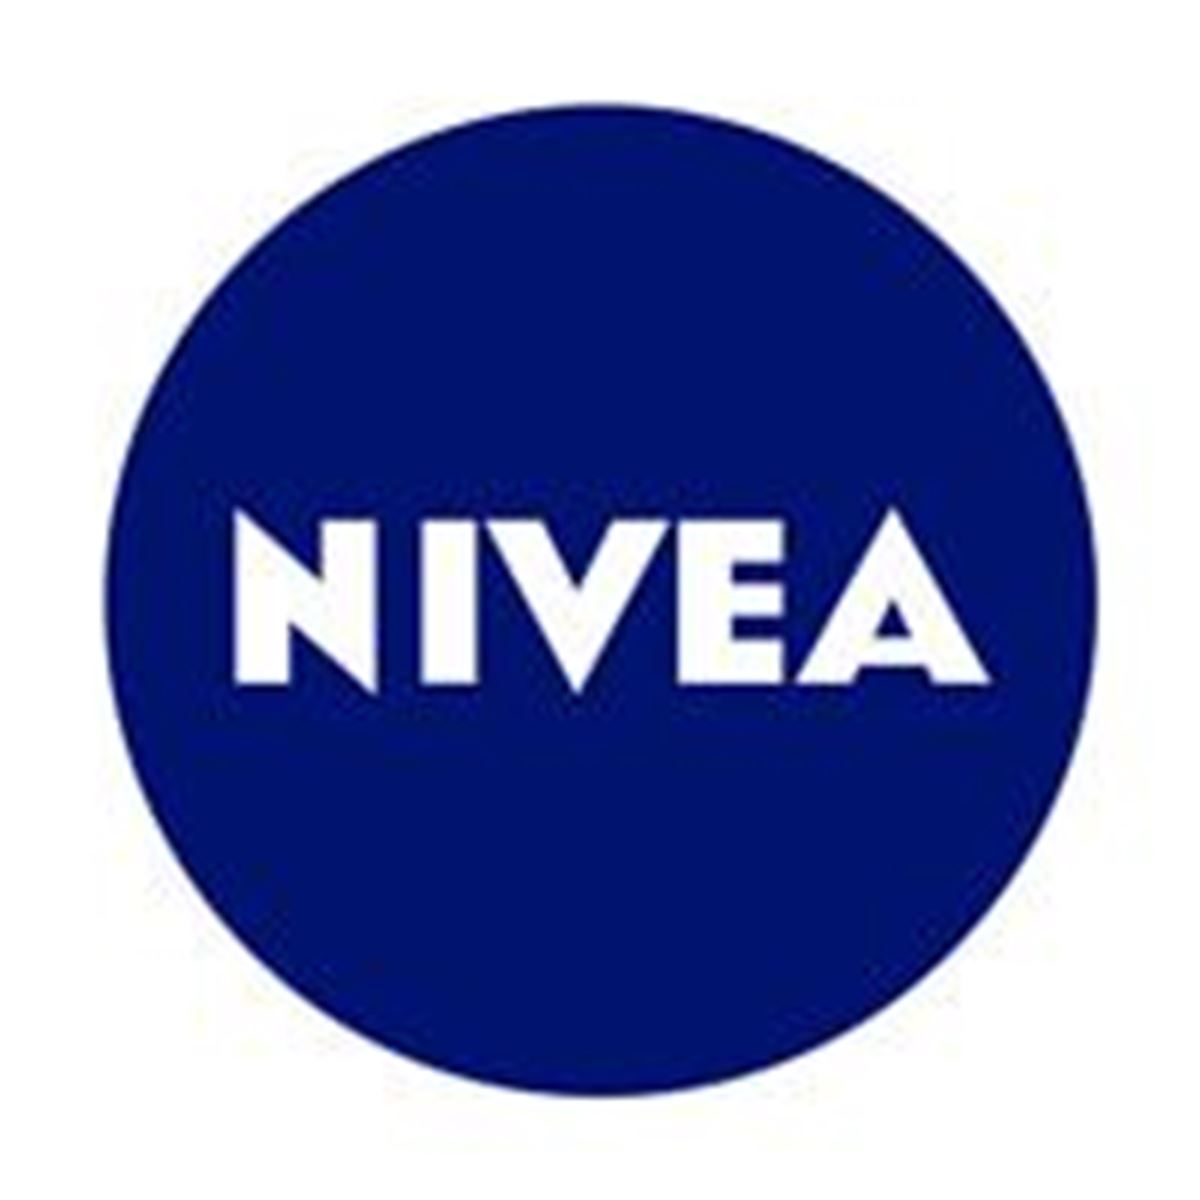 NIVEA_ICON_RGB_200px